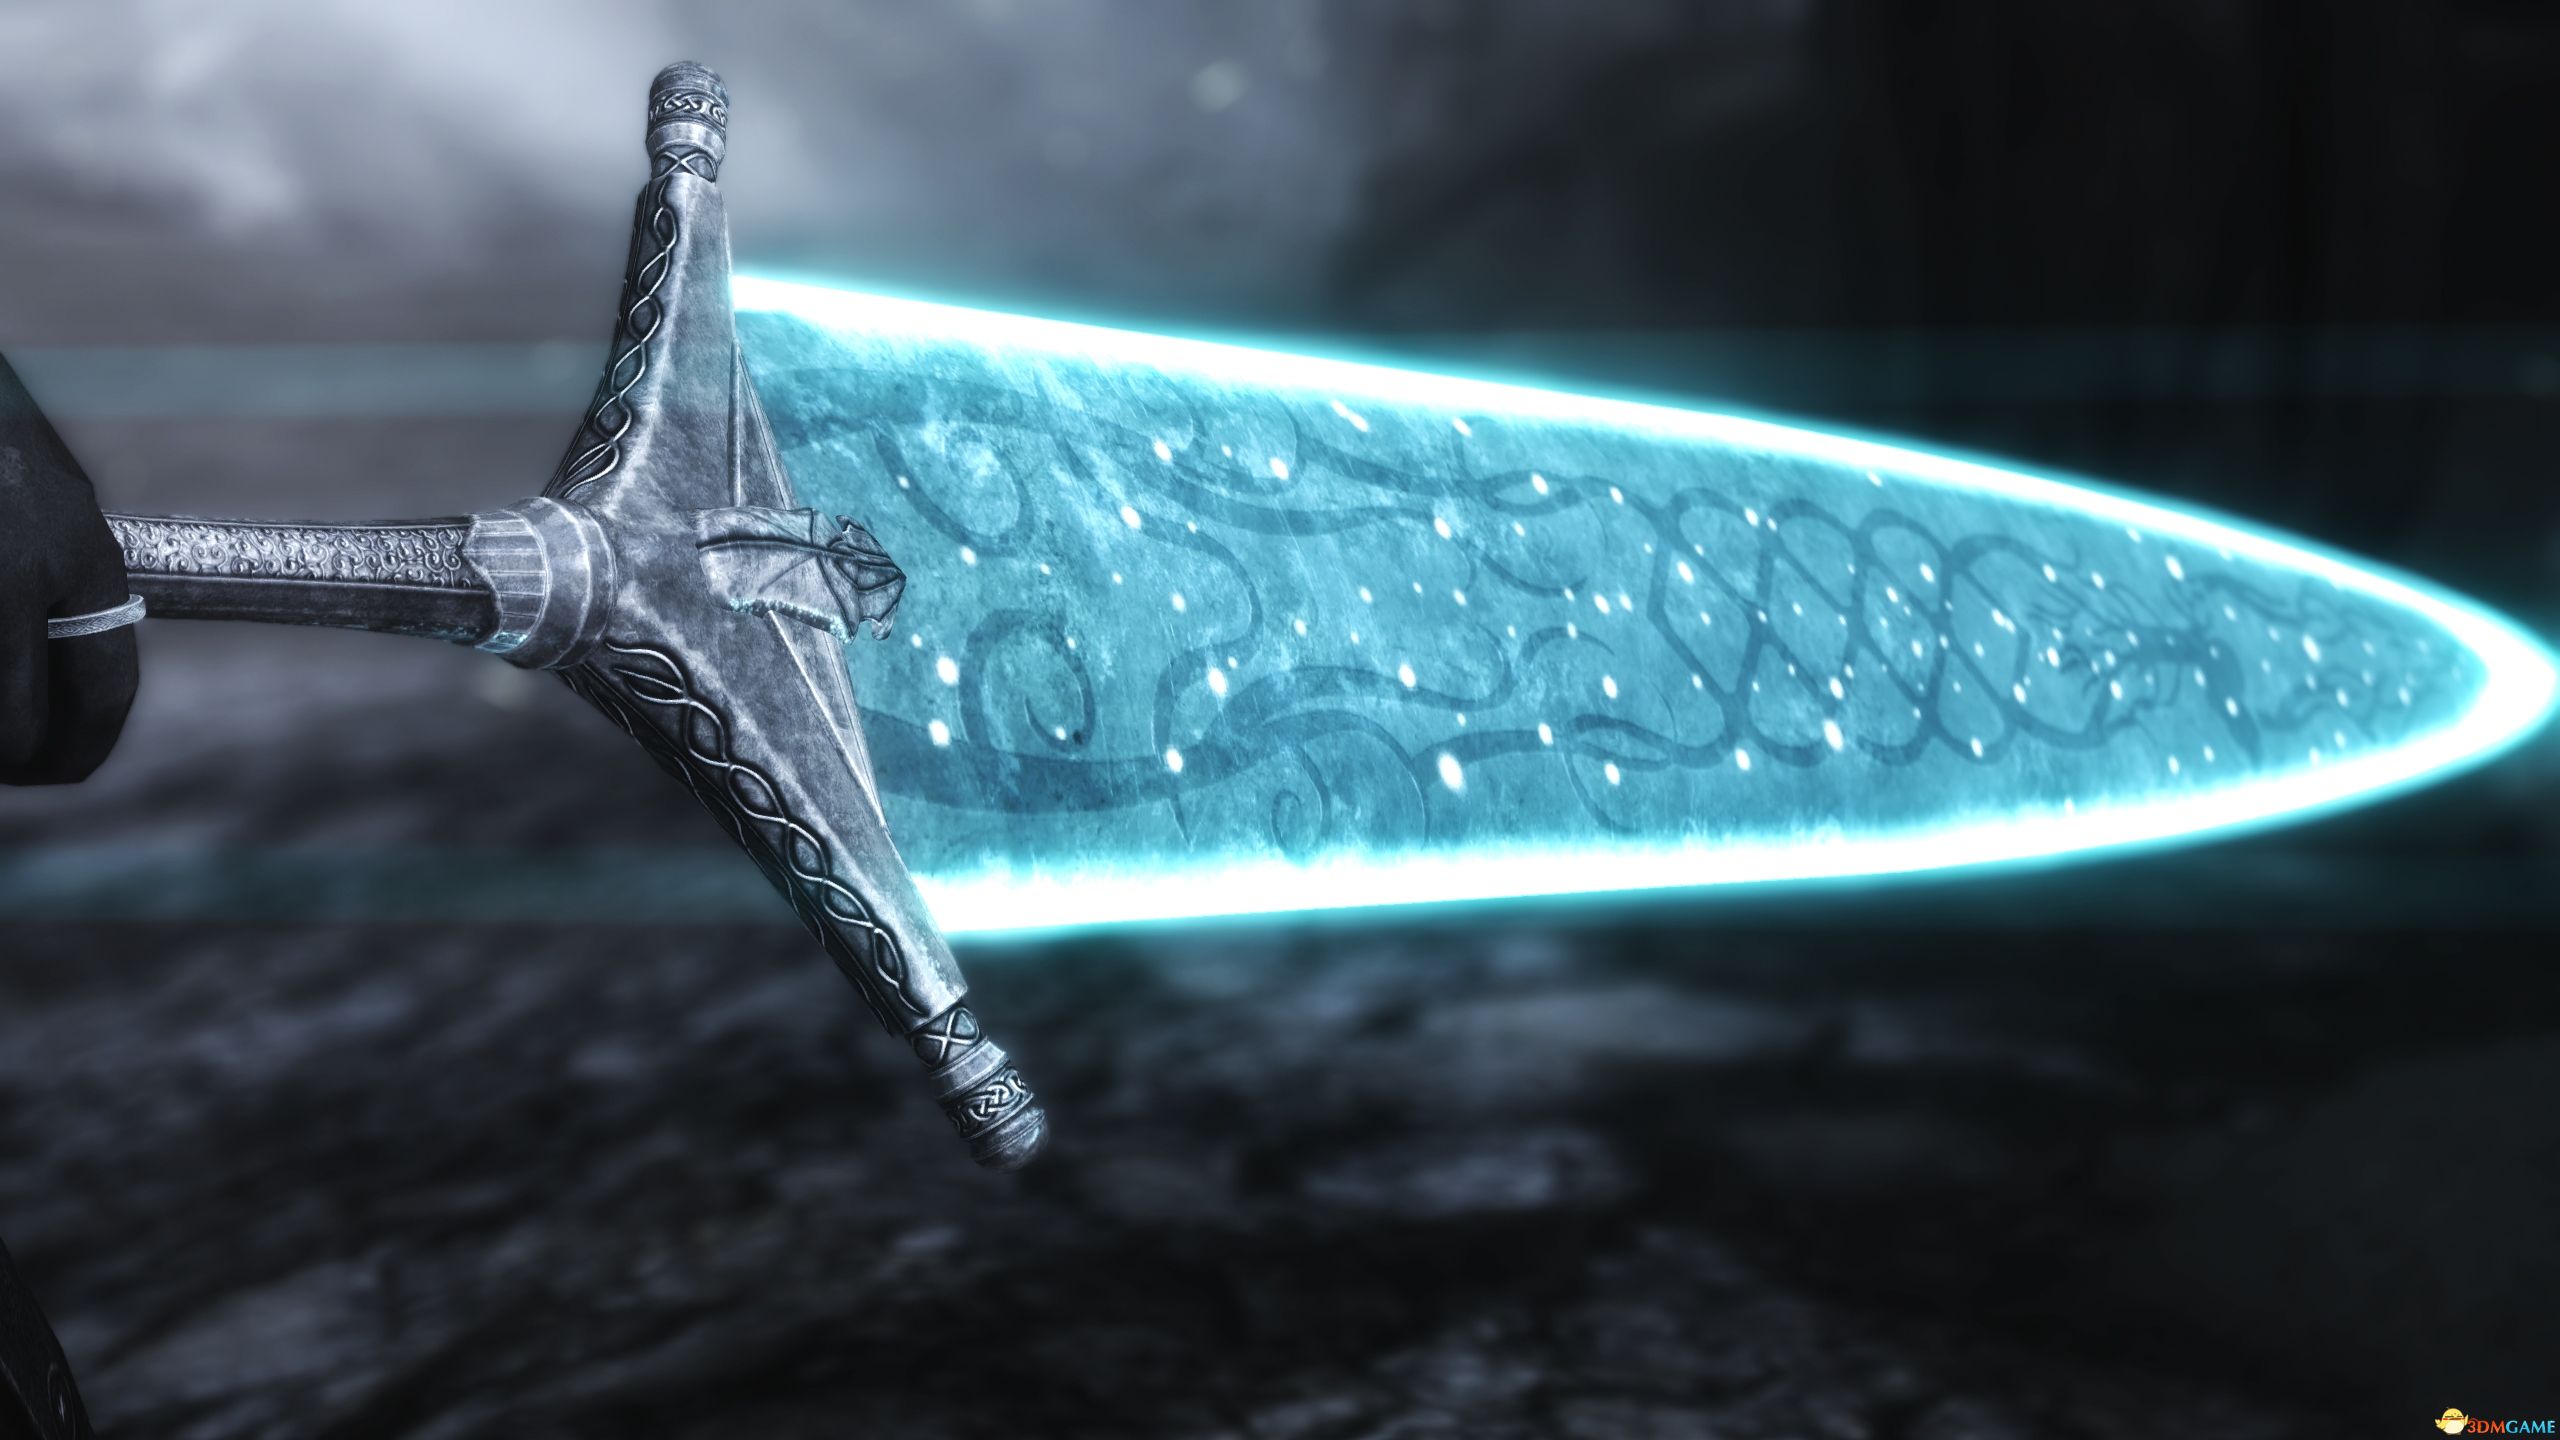 月光巨剑可以通过洛克汗月亮的力量消灭它的敌人